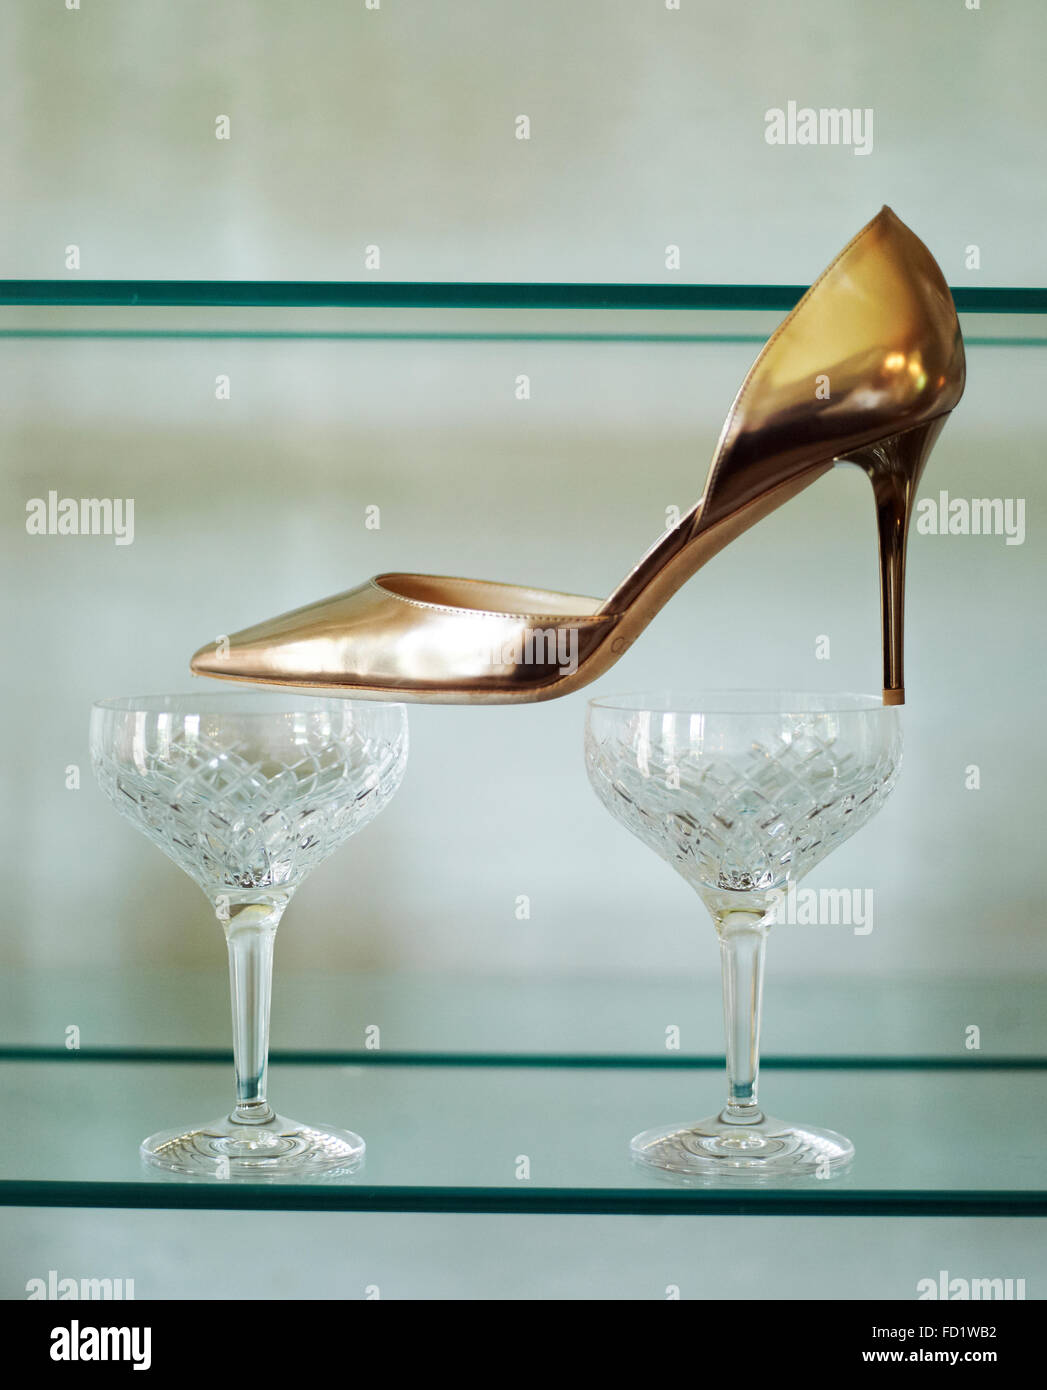 Une chaussure haut talon doré placé sur deux verres à vin Photo Stock -  Alamy